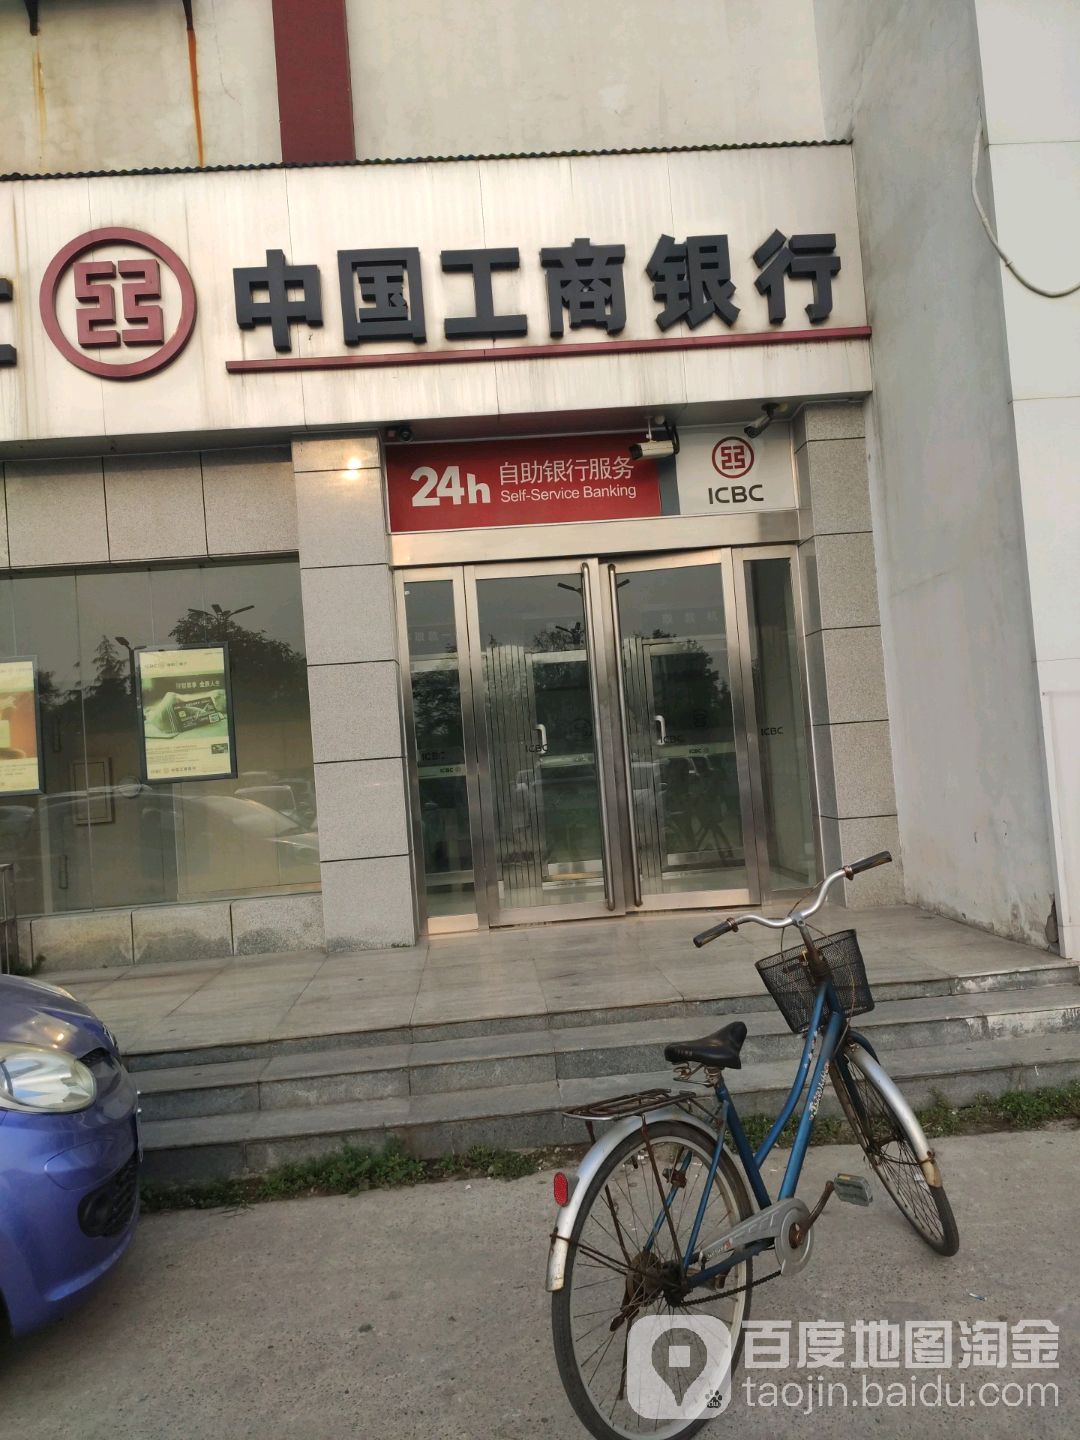 中國工商銀行24小時自助銀行(龍門大道輔路店)